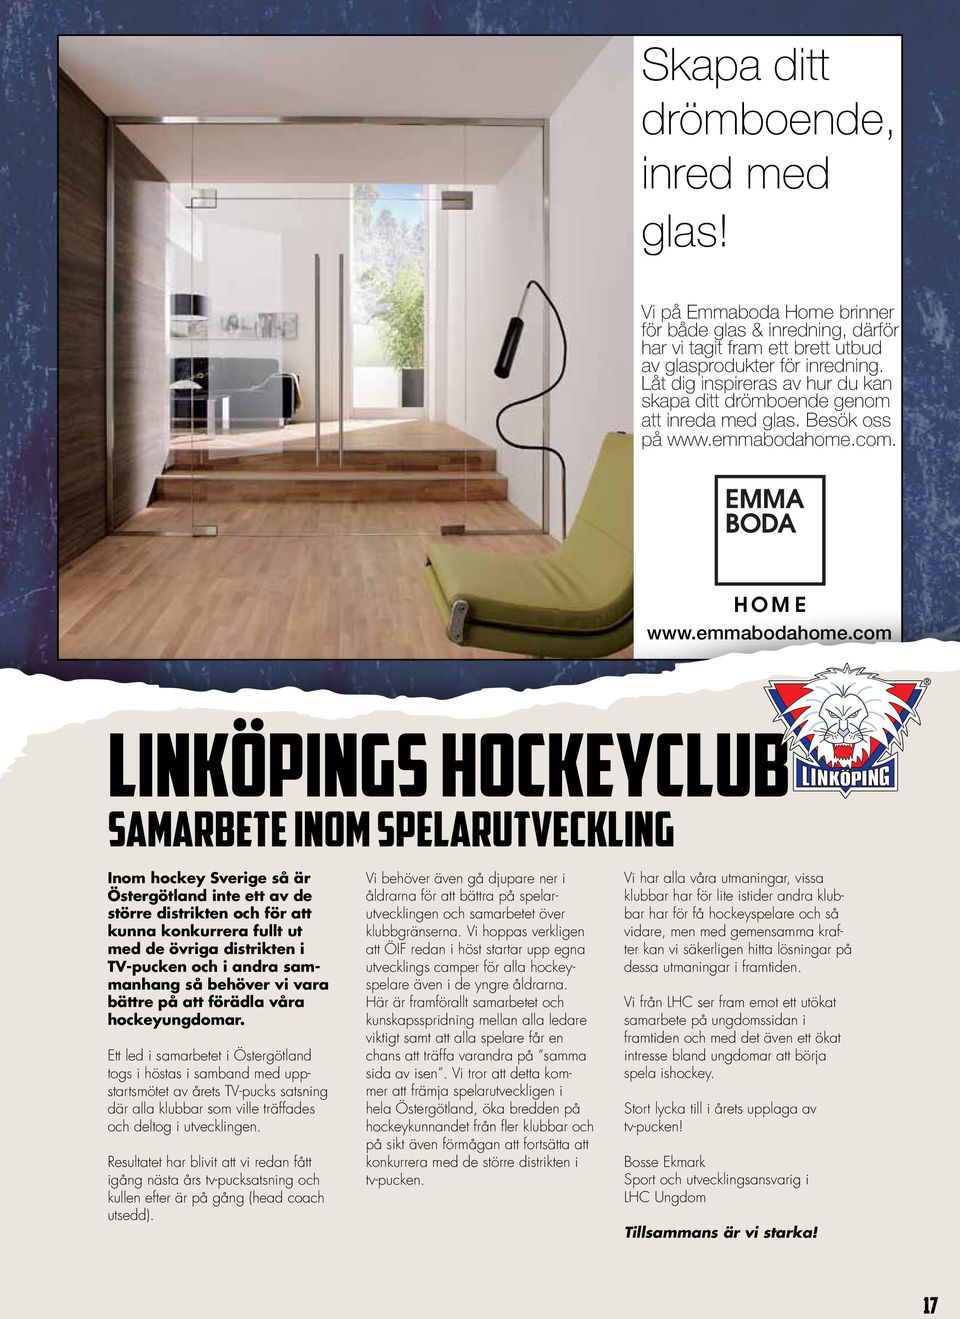 indd 1 2013-04-19 11:06:10 LINKÖPINGS HOCKEYCLUB SAMARBETE INOM SPELARUTVECKLING Inom hockey Sverige så är Östergötland inte ett av de större distrikten och för att kunna konkurrera fullt ut med de